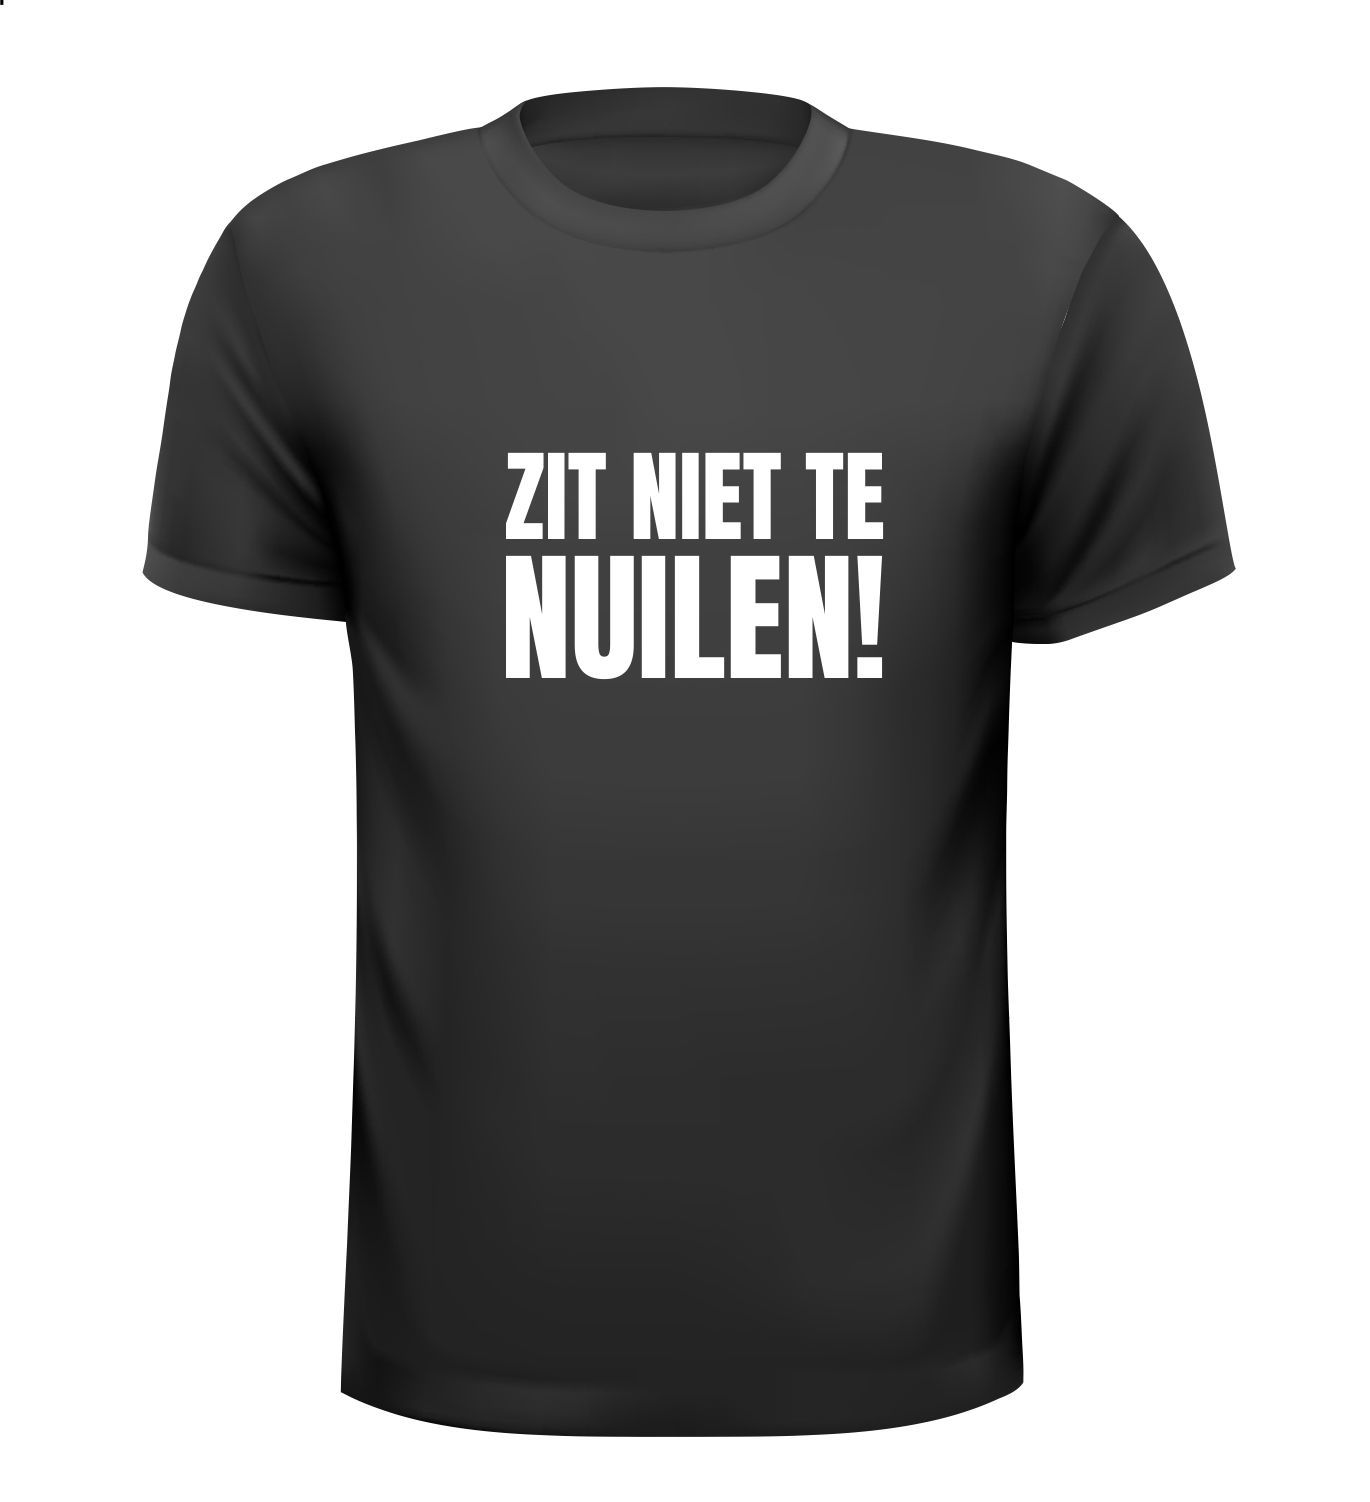 T-shirt Zit niet te nuilen Nijmeegs dialet niet zeuren shirtje Nijmegen